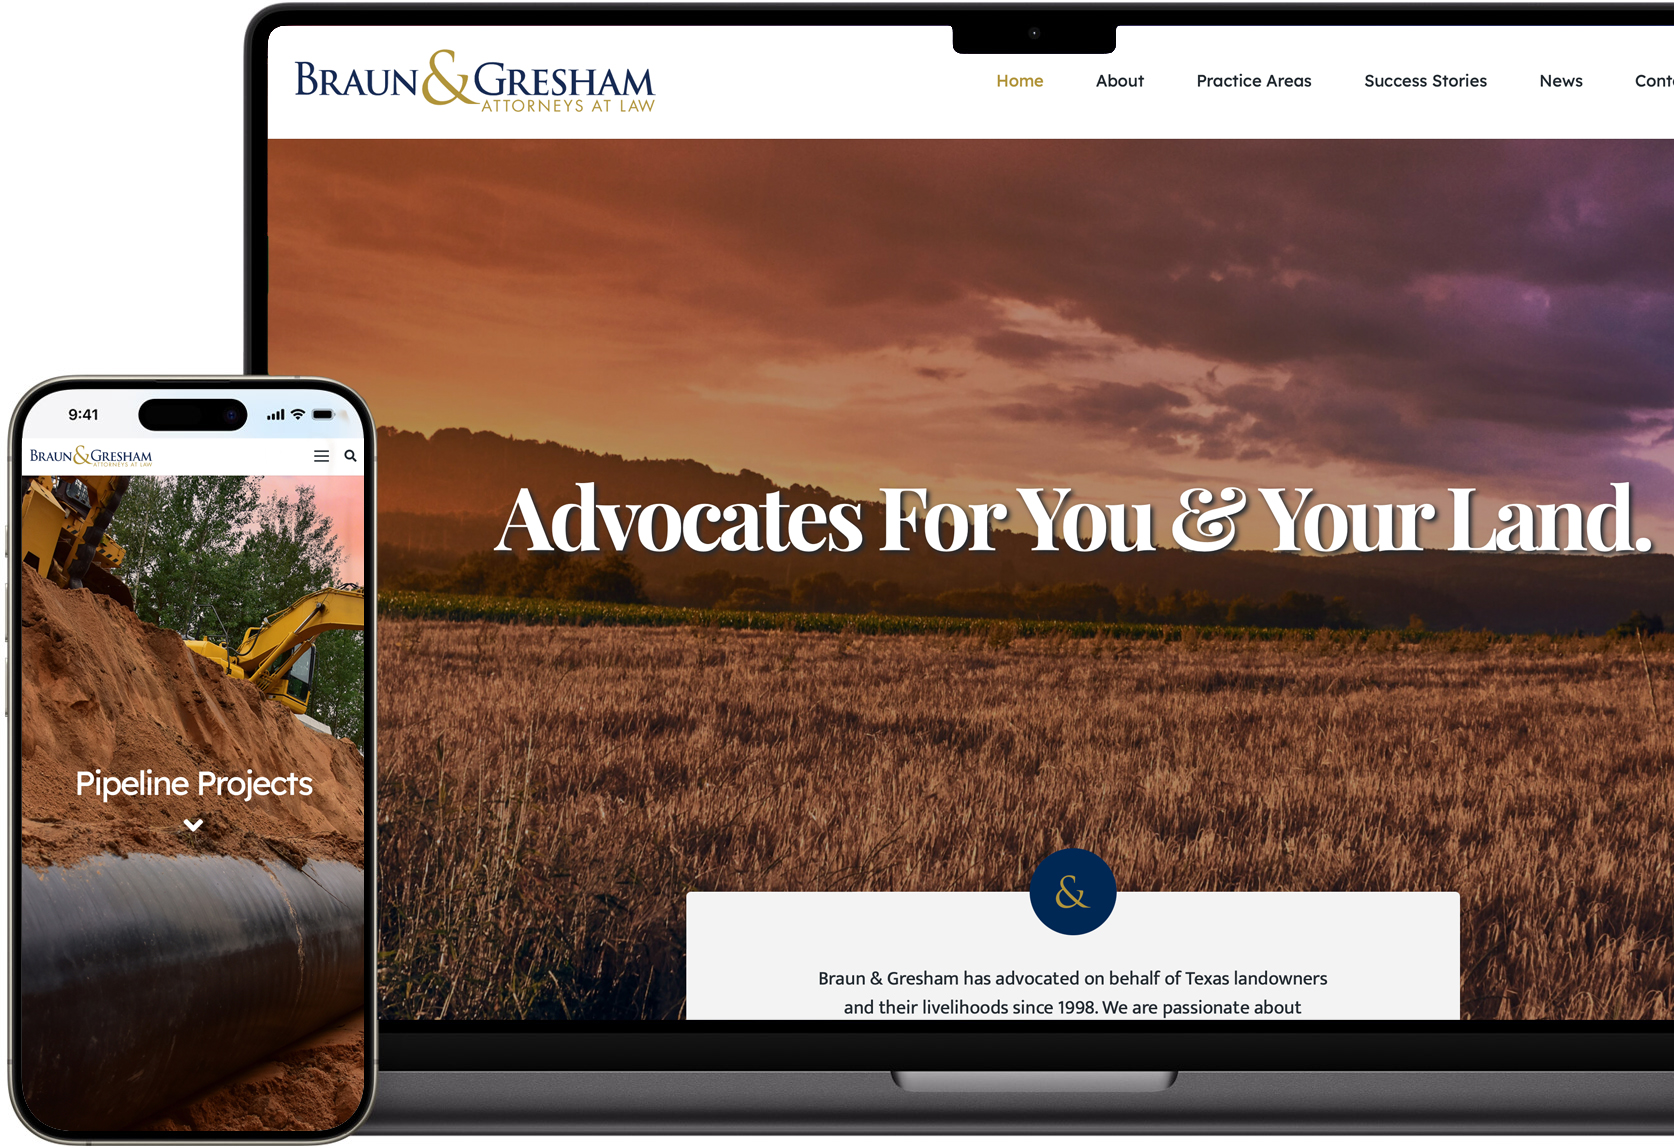 New Braun & Gresham Website